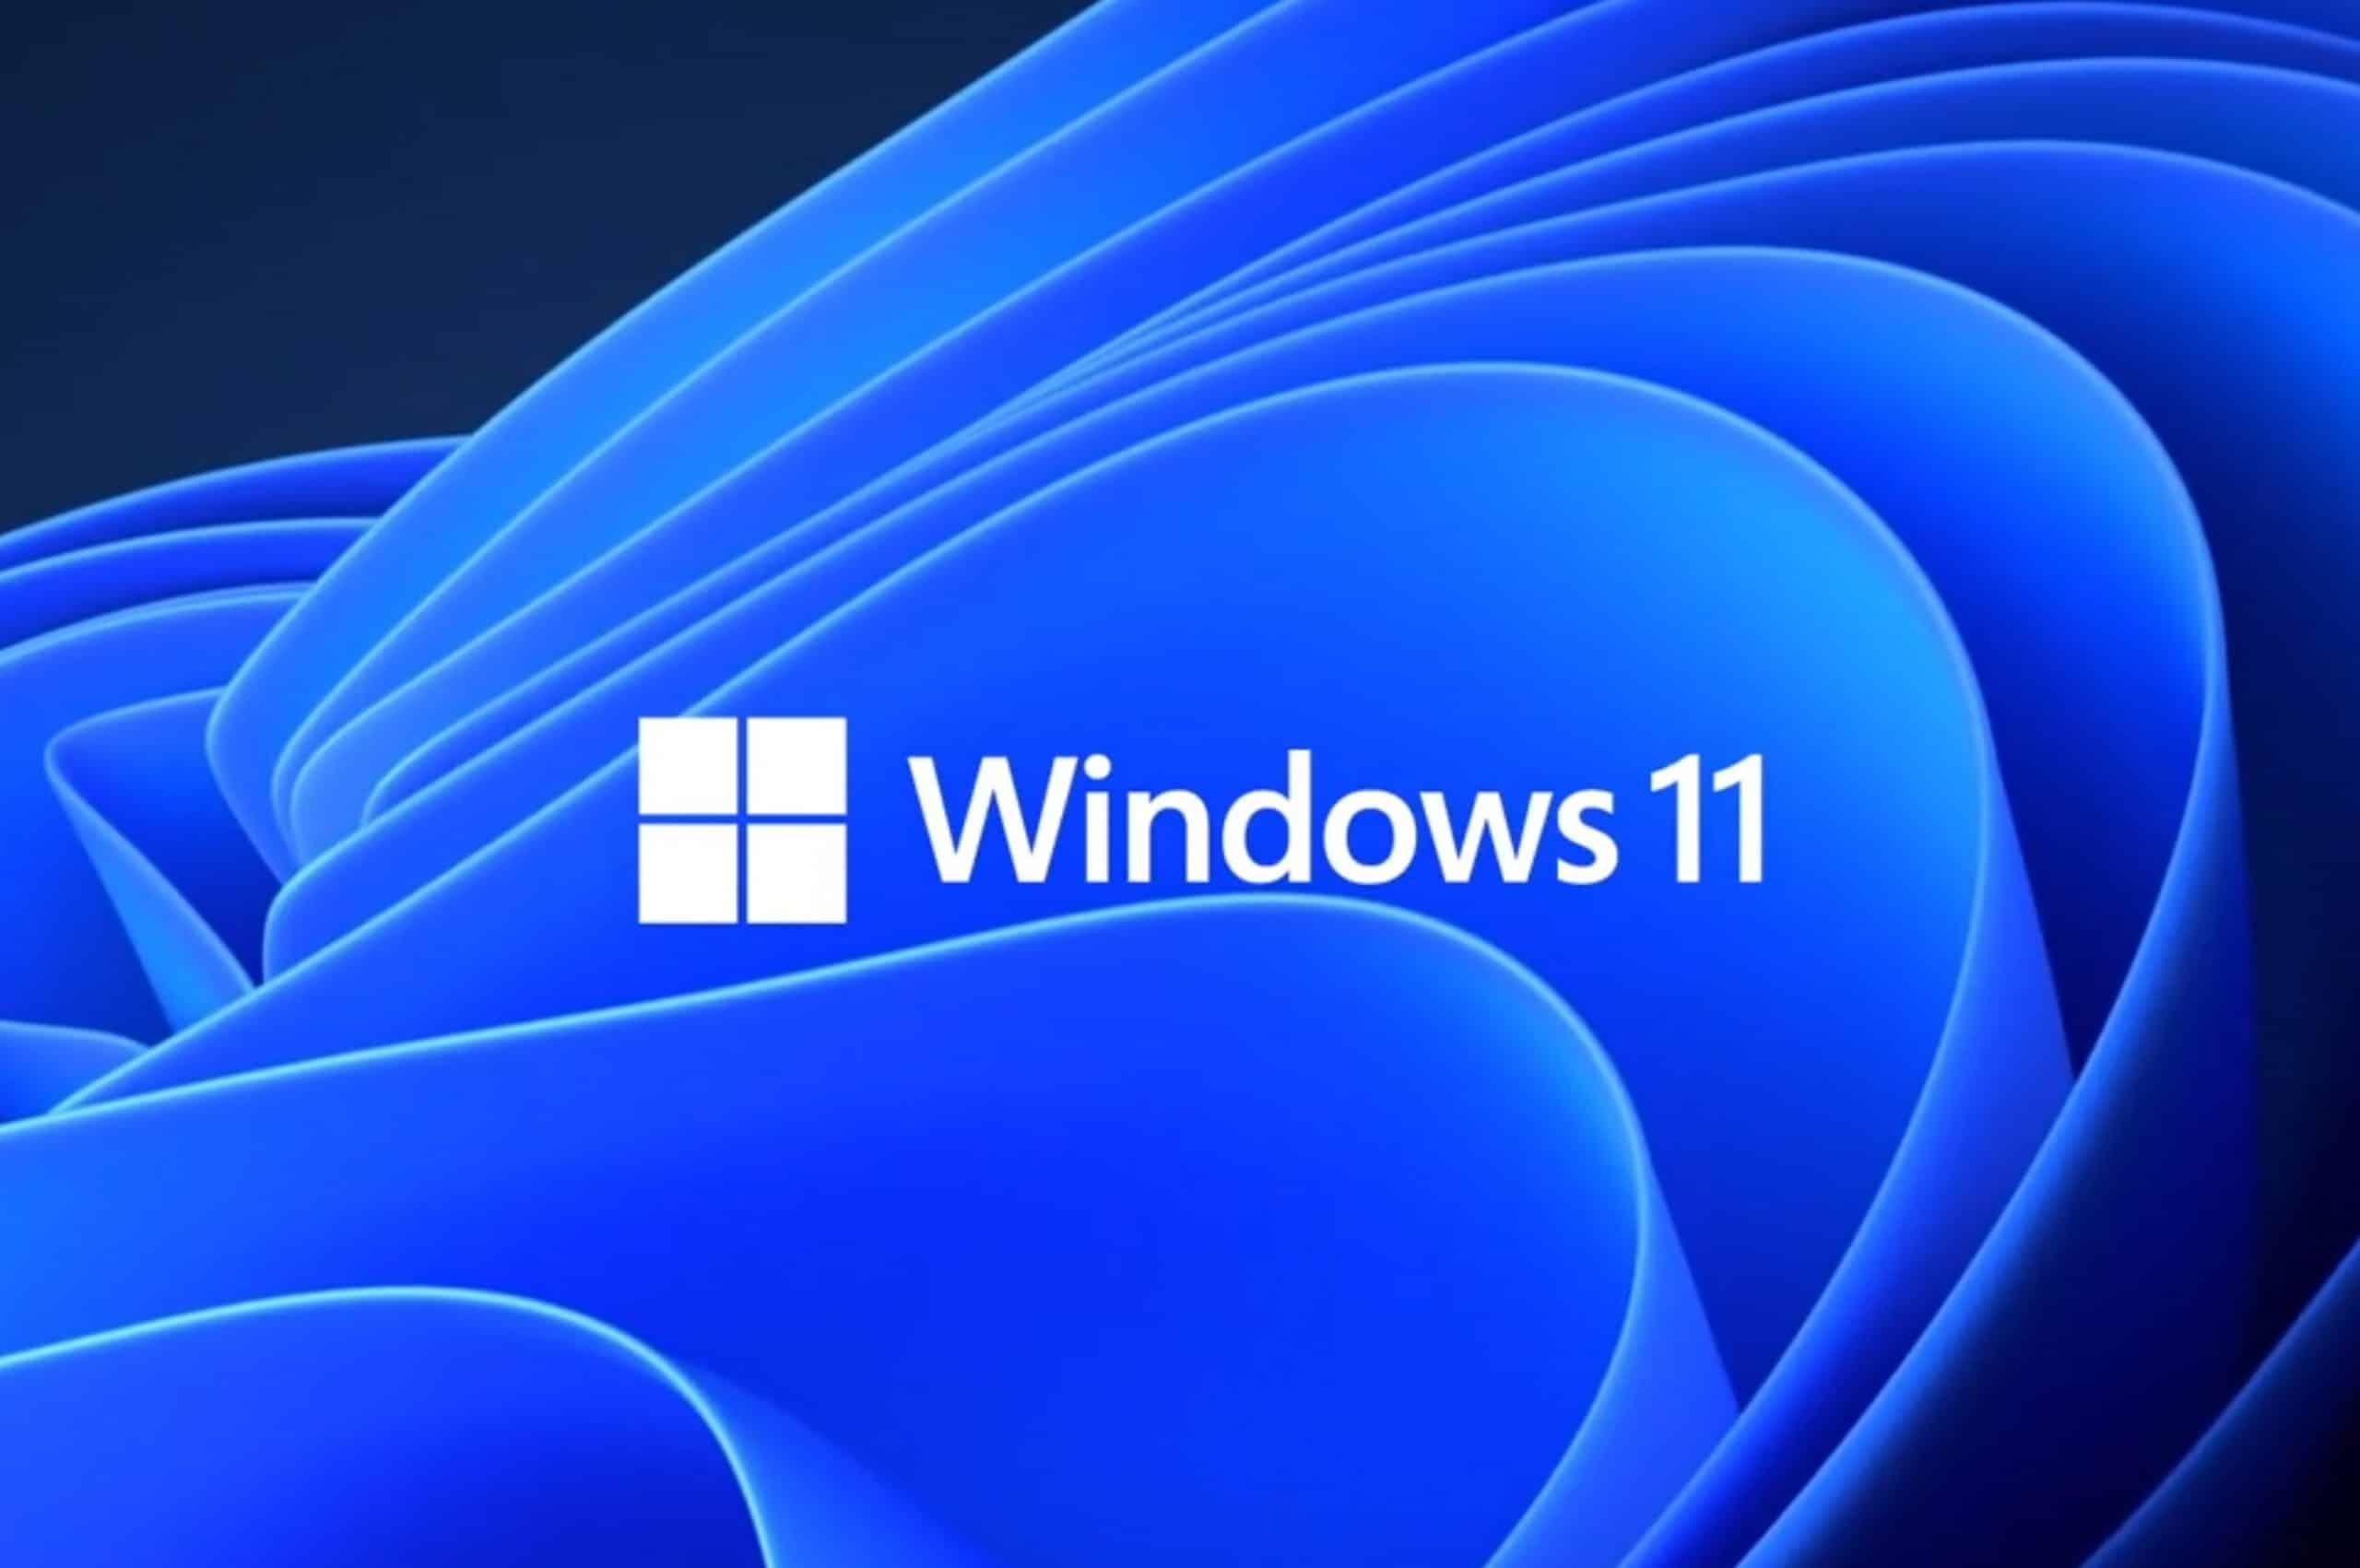 La Configuración de Windows 11 pronto tendrá una nueva pestaña Inicio, que contendrá los controles más utilizados